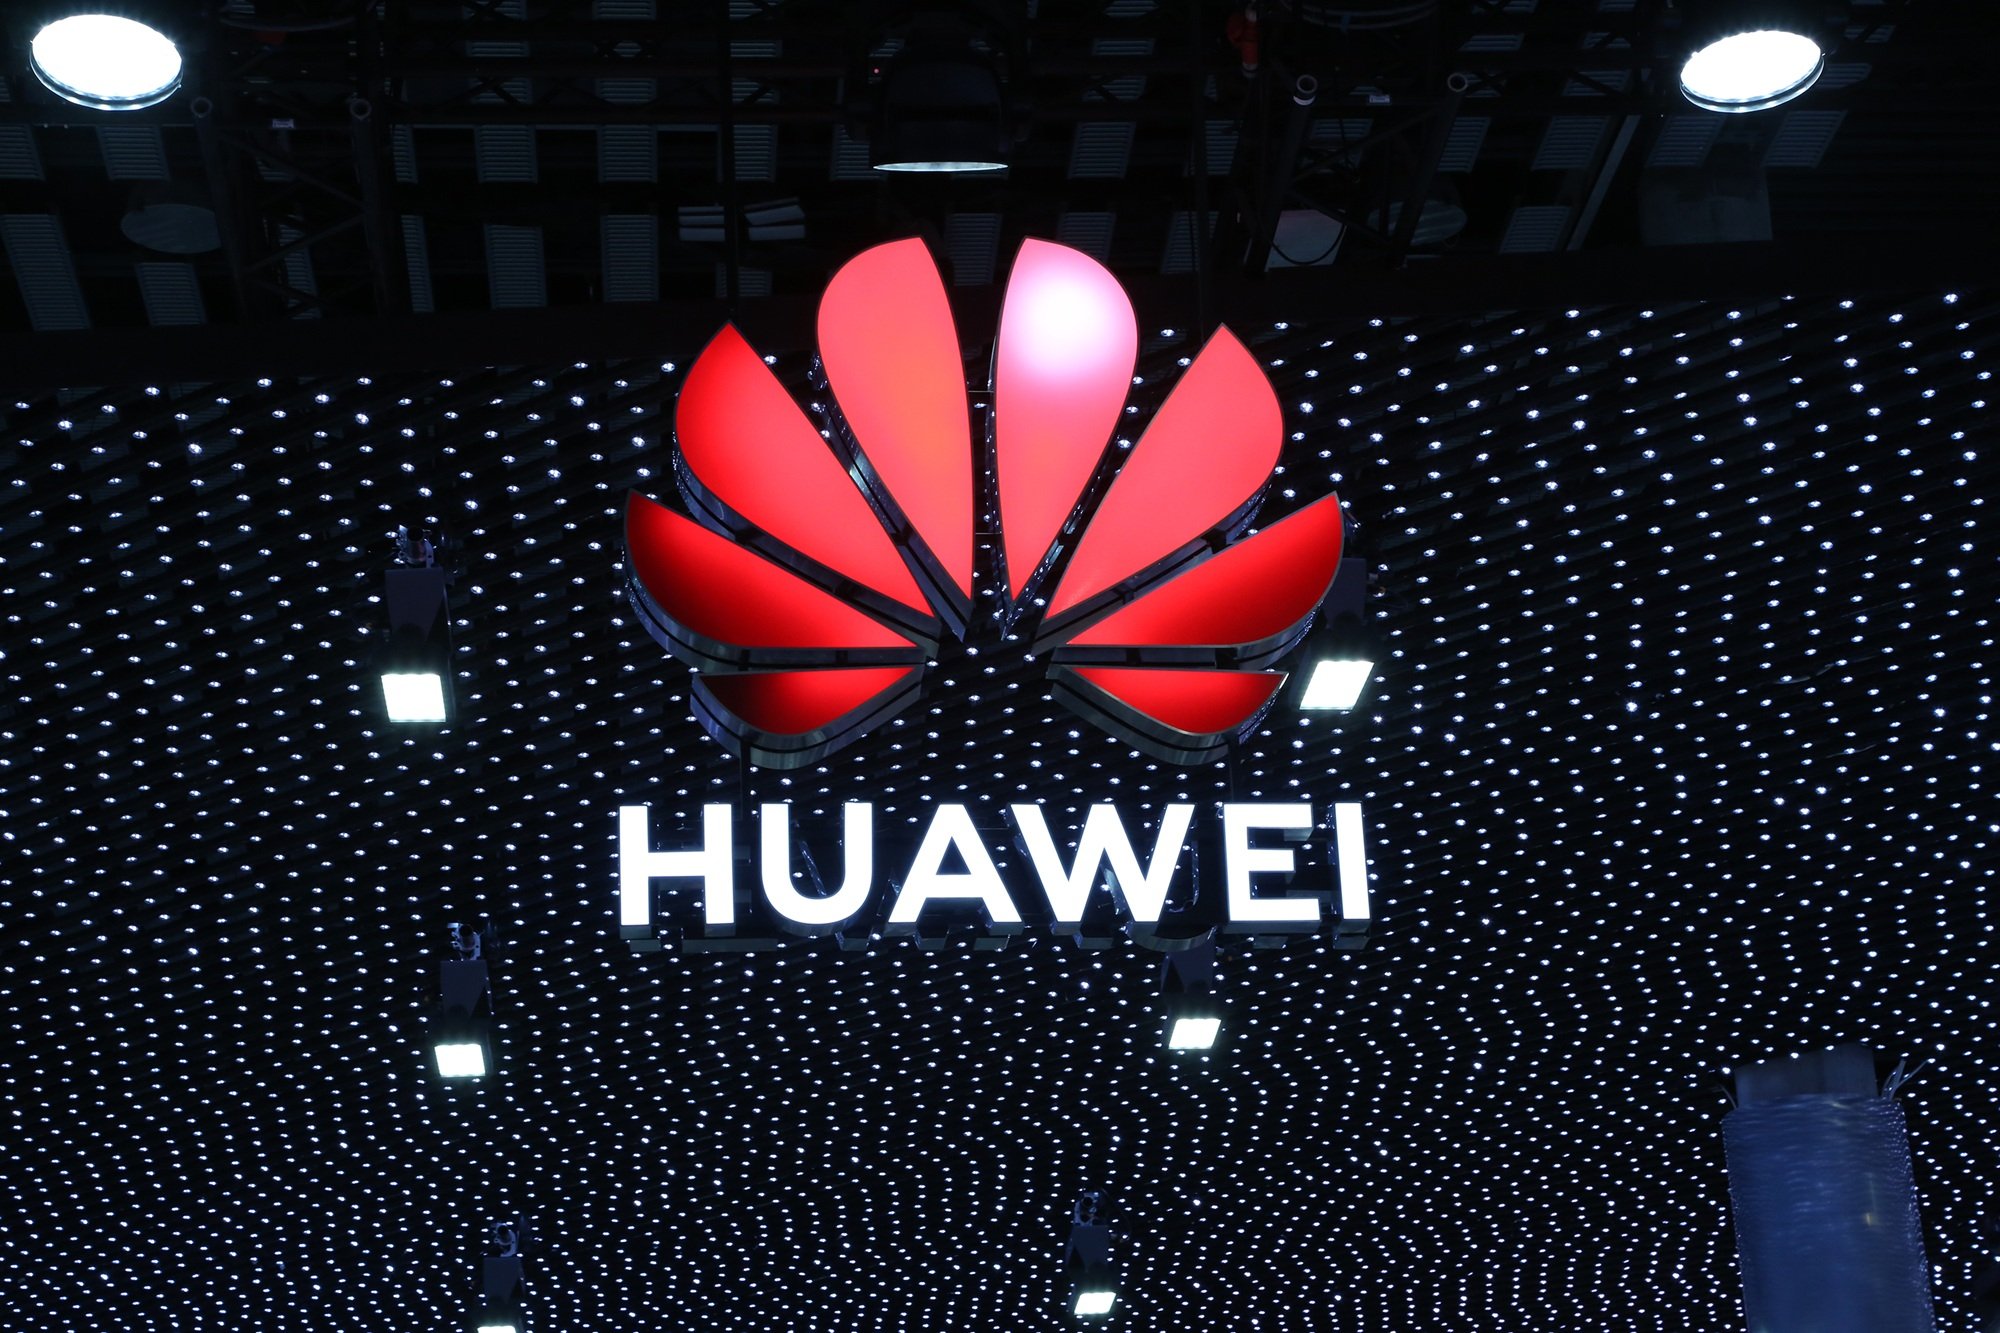 Huawei ประกาศว่า บริษัทจะย้ายทีมพัฒนาเทคโนโลยีทั้งหมดของรถยนต์อัจฉริยะหรือสมาร์ทคาร์ ไปร่วมกับบริษัทร่วมทุนจัดตั้งใหม่ของ Changan Auto โดย Huawei จะถือหุ้นราว 40%